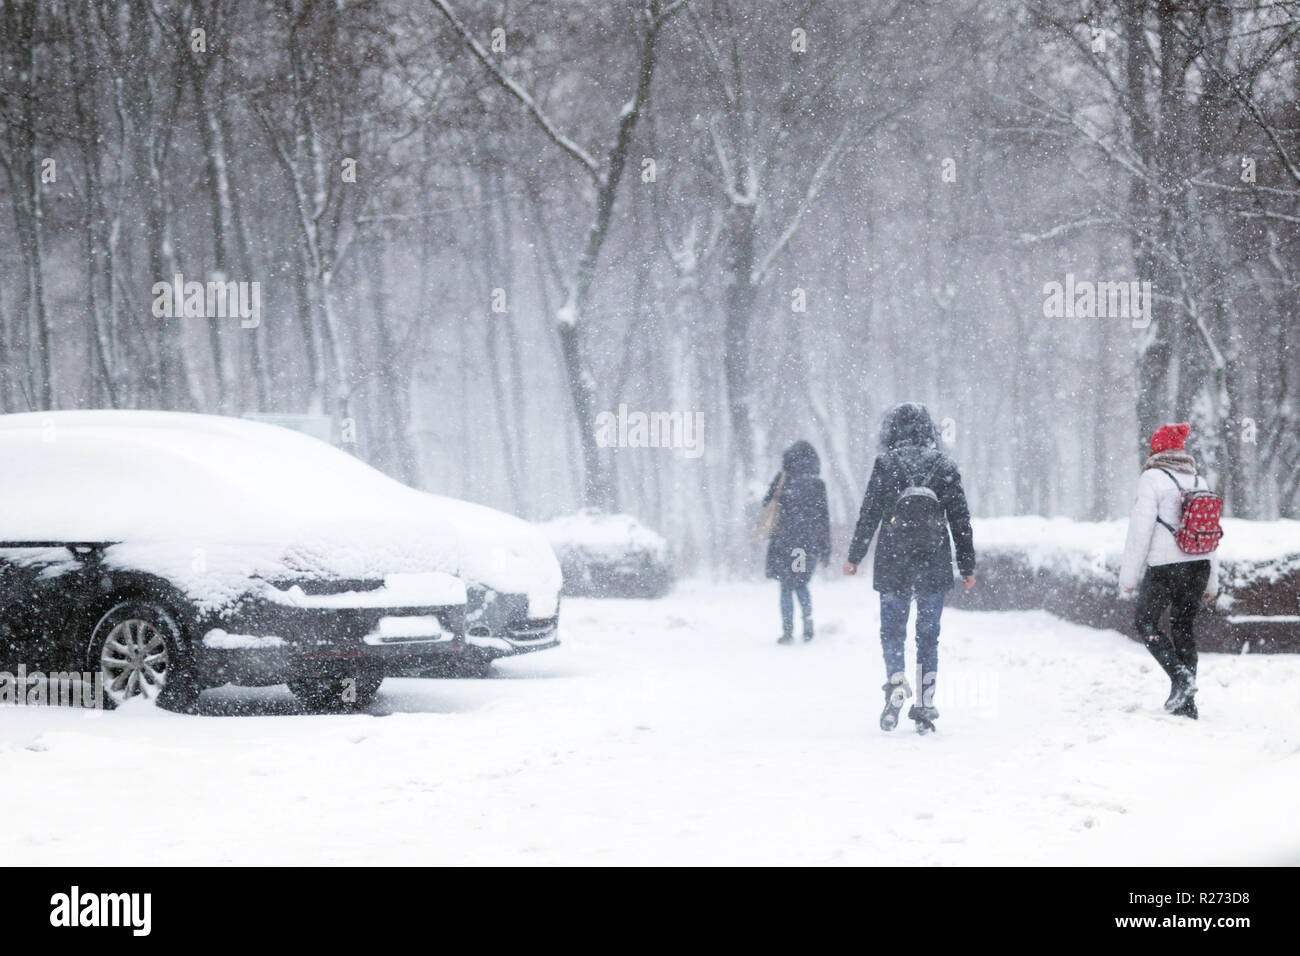 Menschen zu Fuß durch die Stadt Strasse mit Schnee bedeckt während starker Schneefall. Blizzard in der Stadt im Winter. Naturkatastrophen, Schnee, Sturm Stockfoto